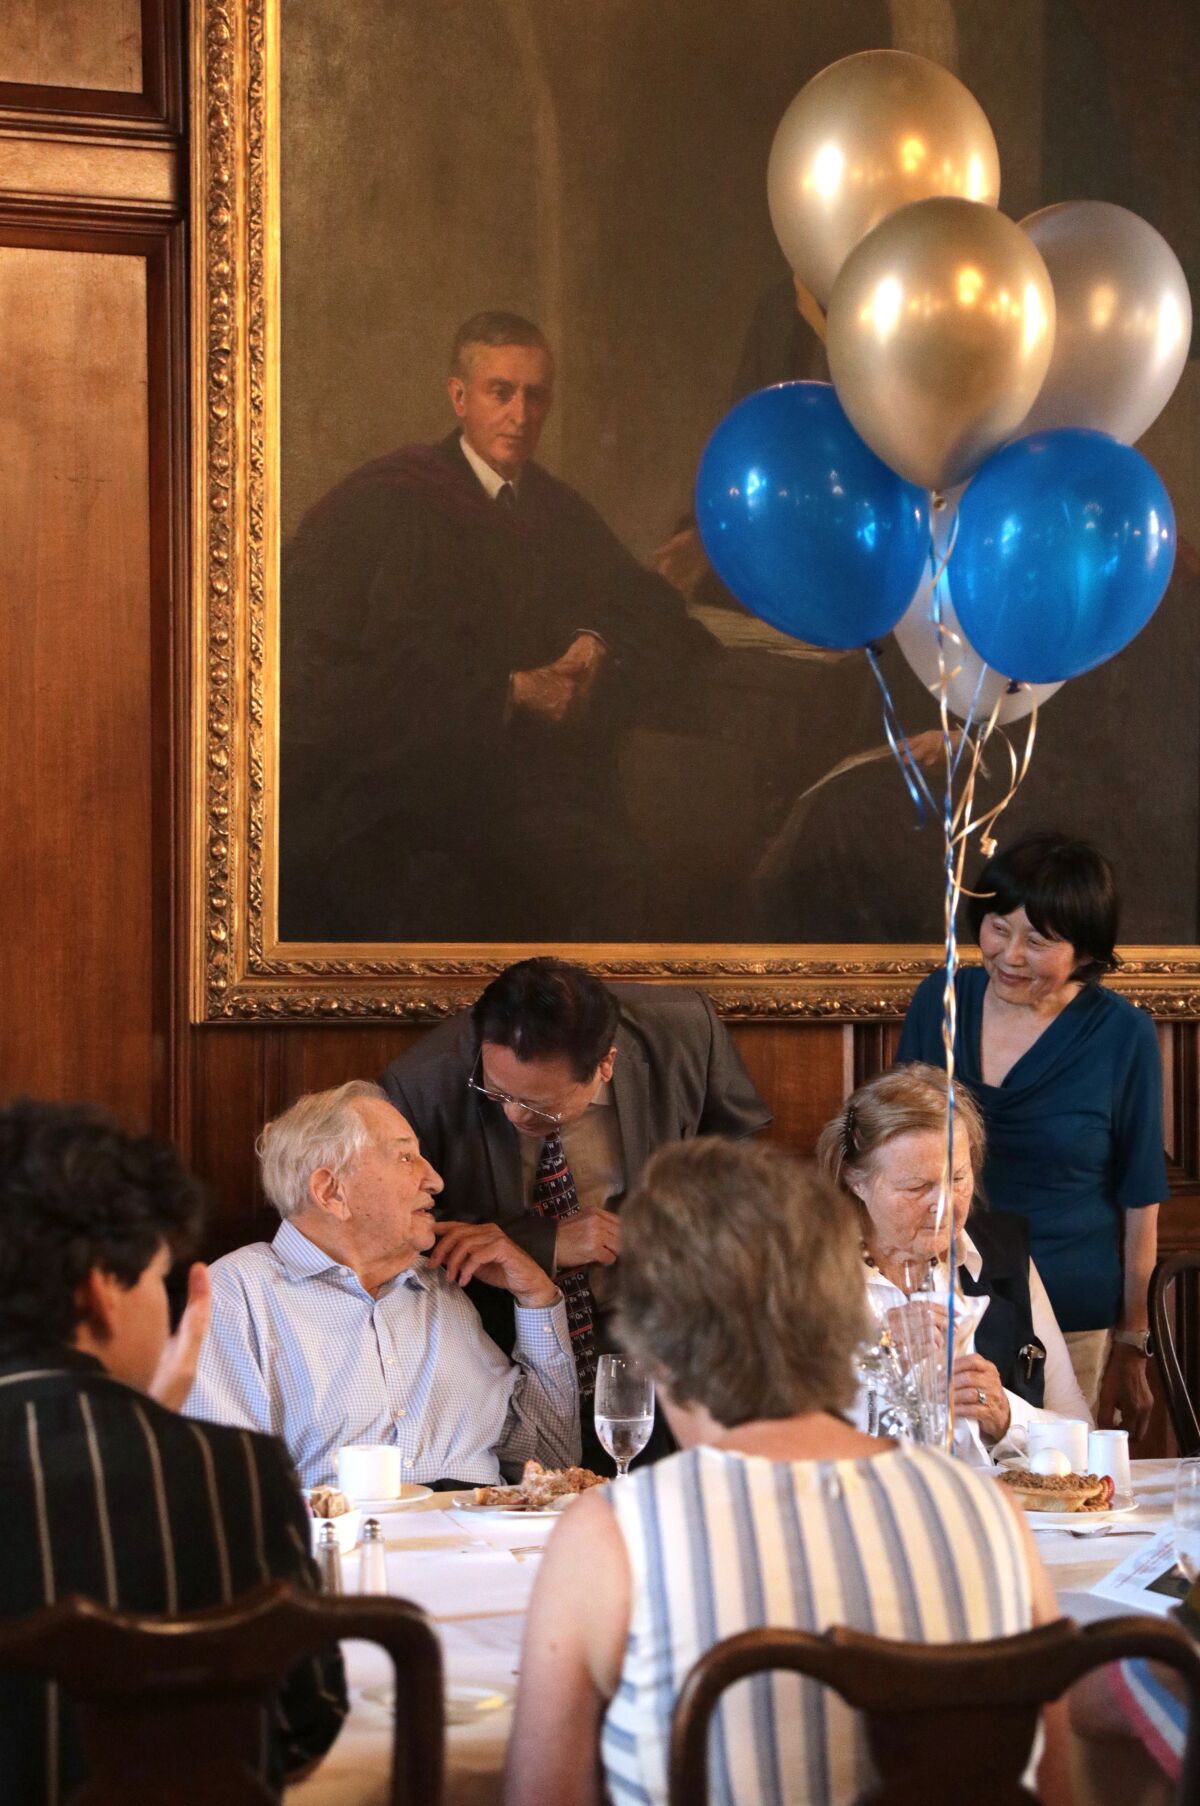 Jack Y. Zhang, Caltech'te Nobel ödüllü kişinin 100. doğum günü kutlaması sırasında Rudy Marcus ile sohbet ediyor.